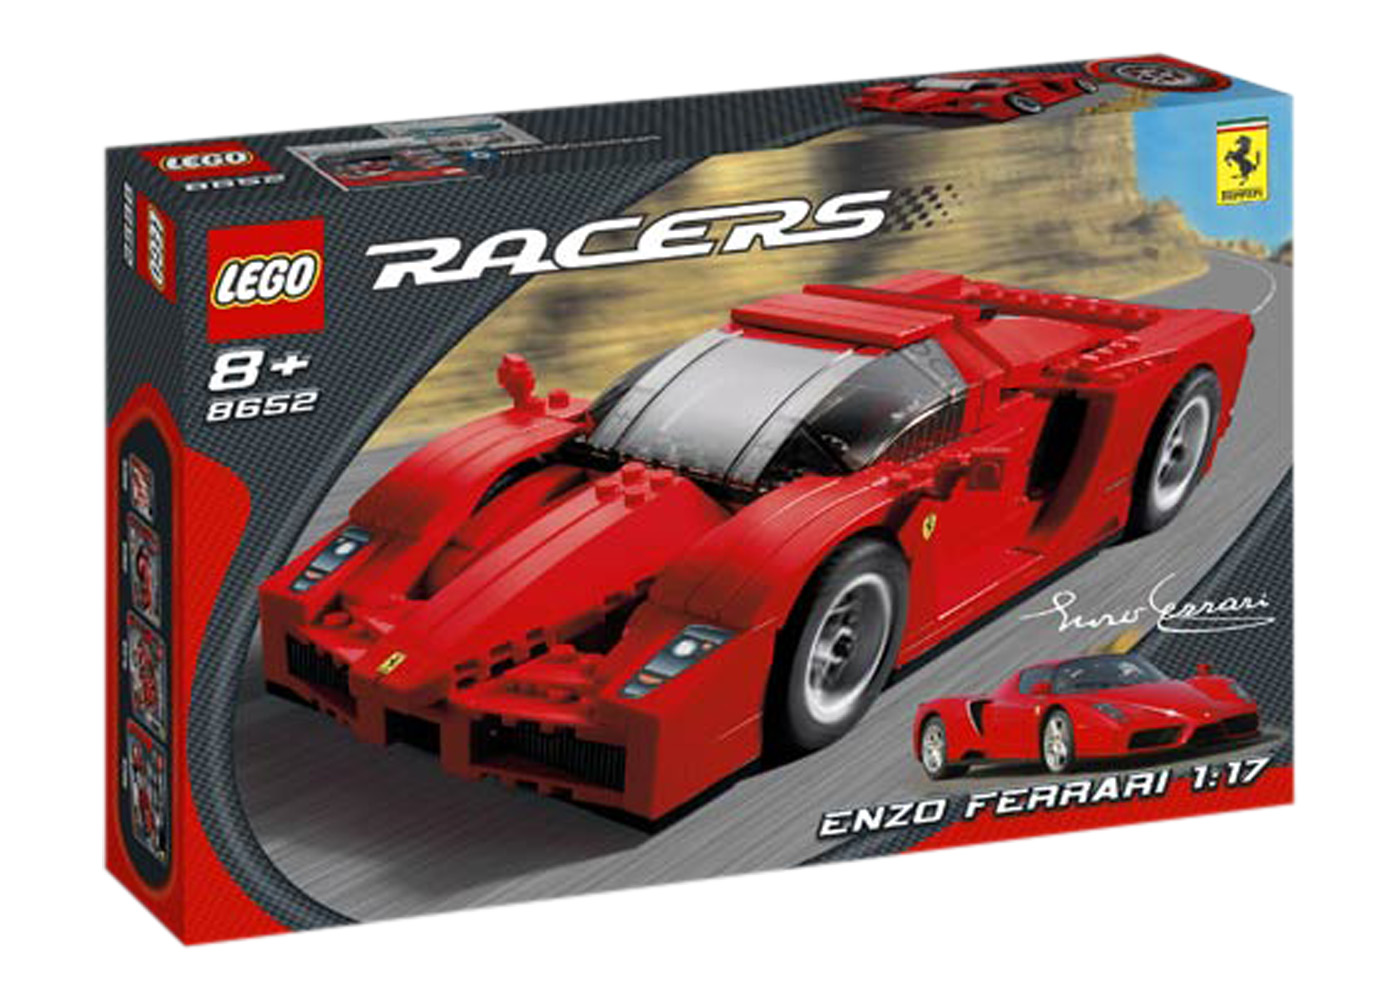 LEGO Racers Enzo Ferrari 1:17 Set 8652